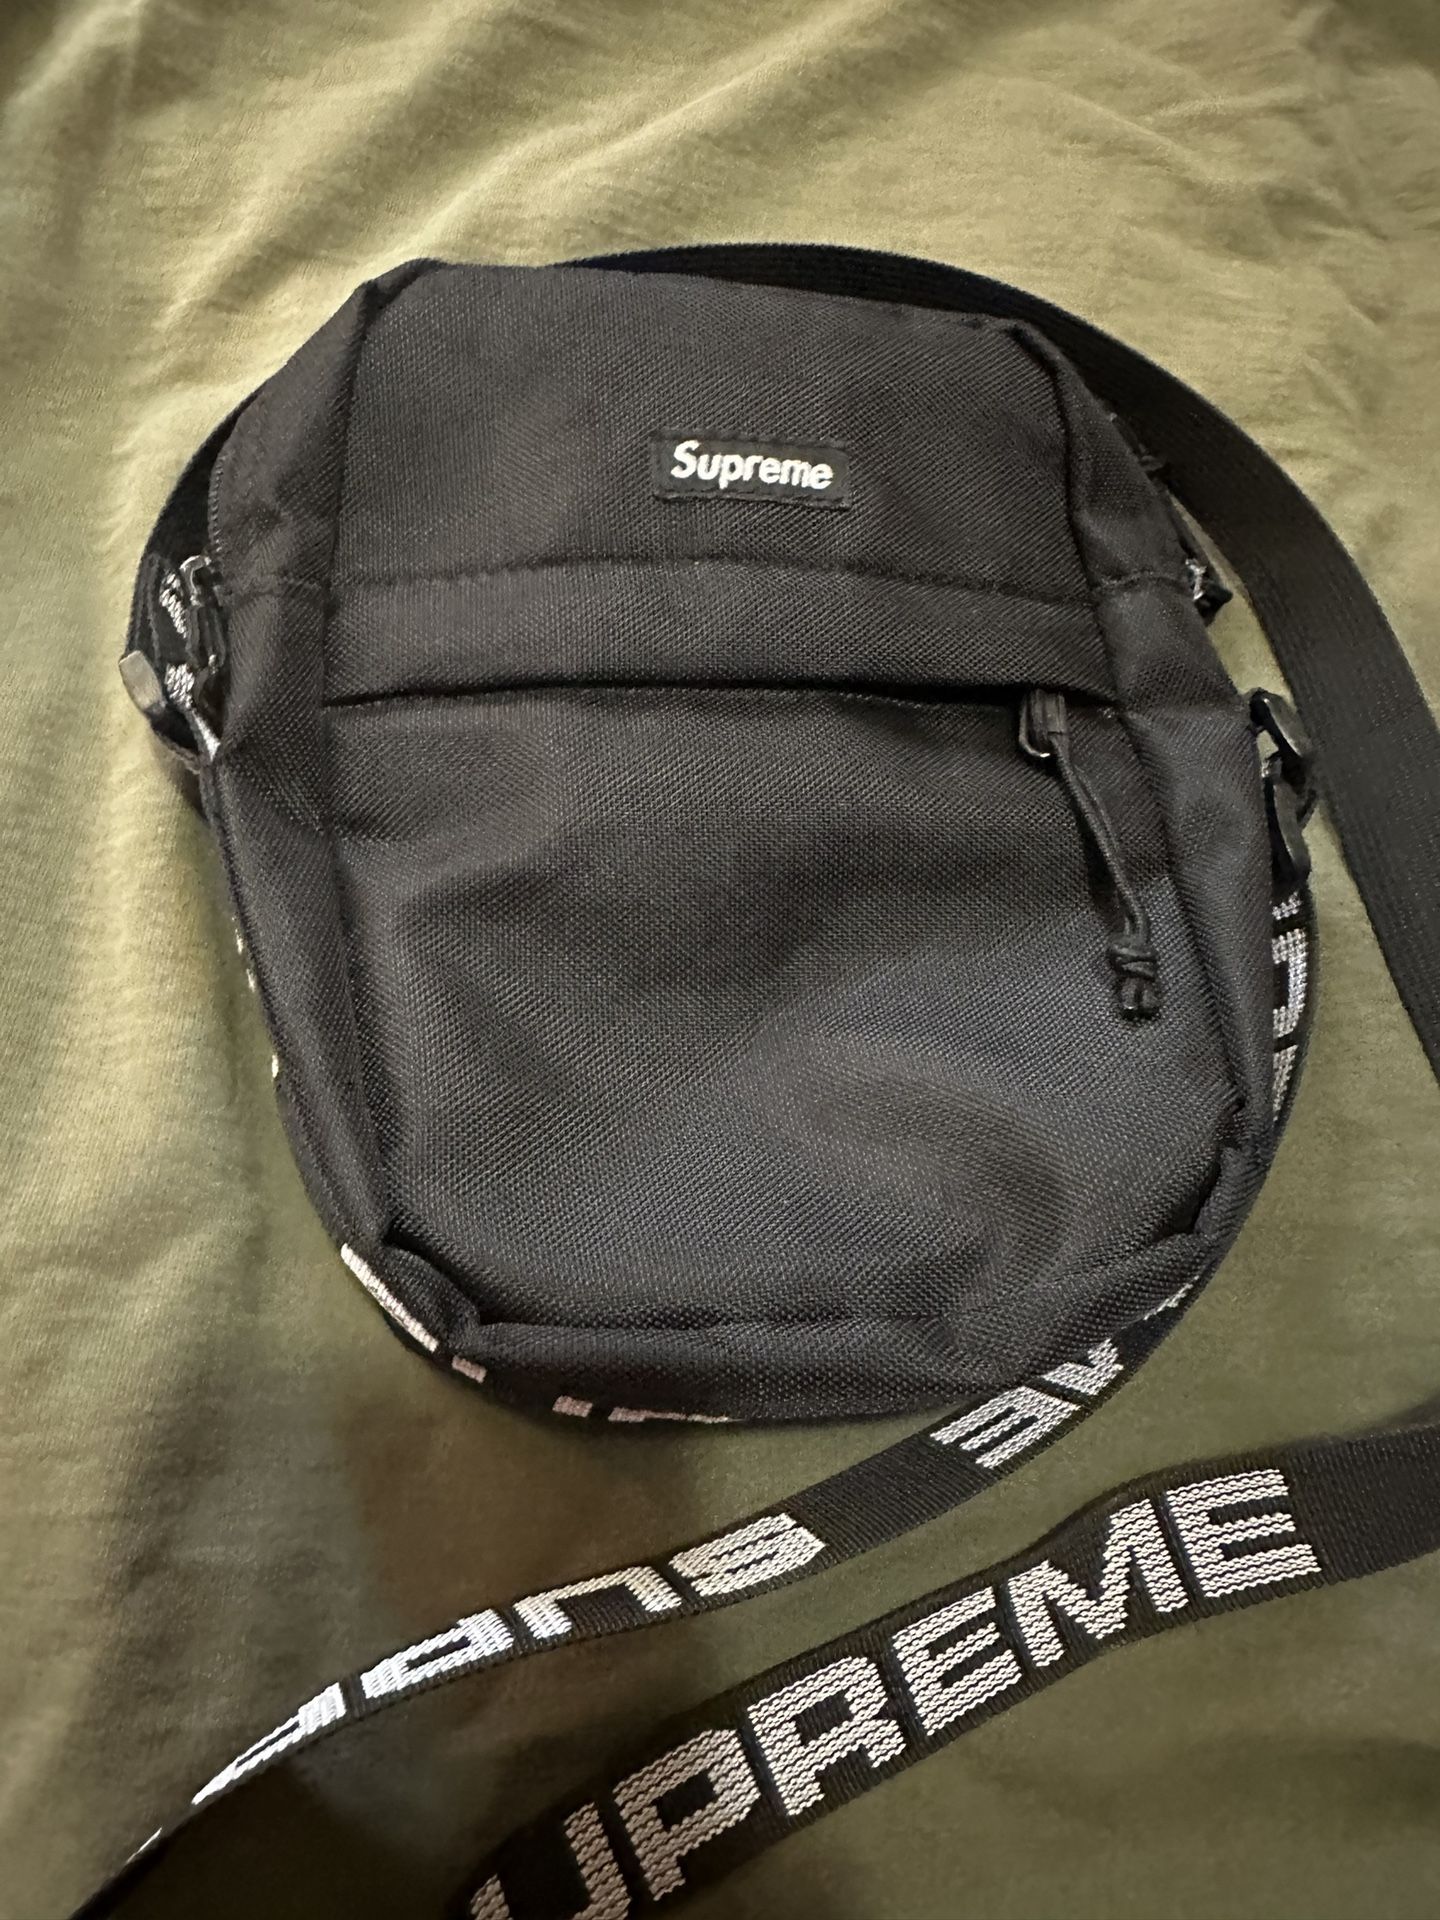 Supreme Cross Bag New